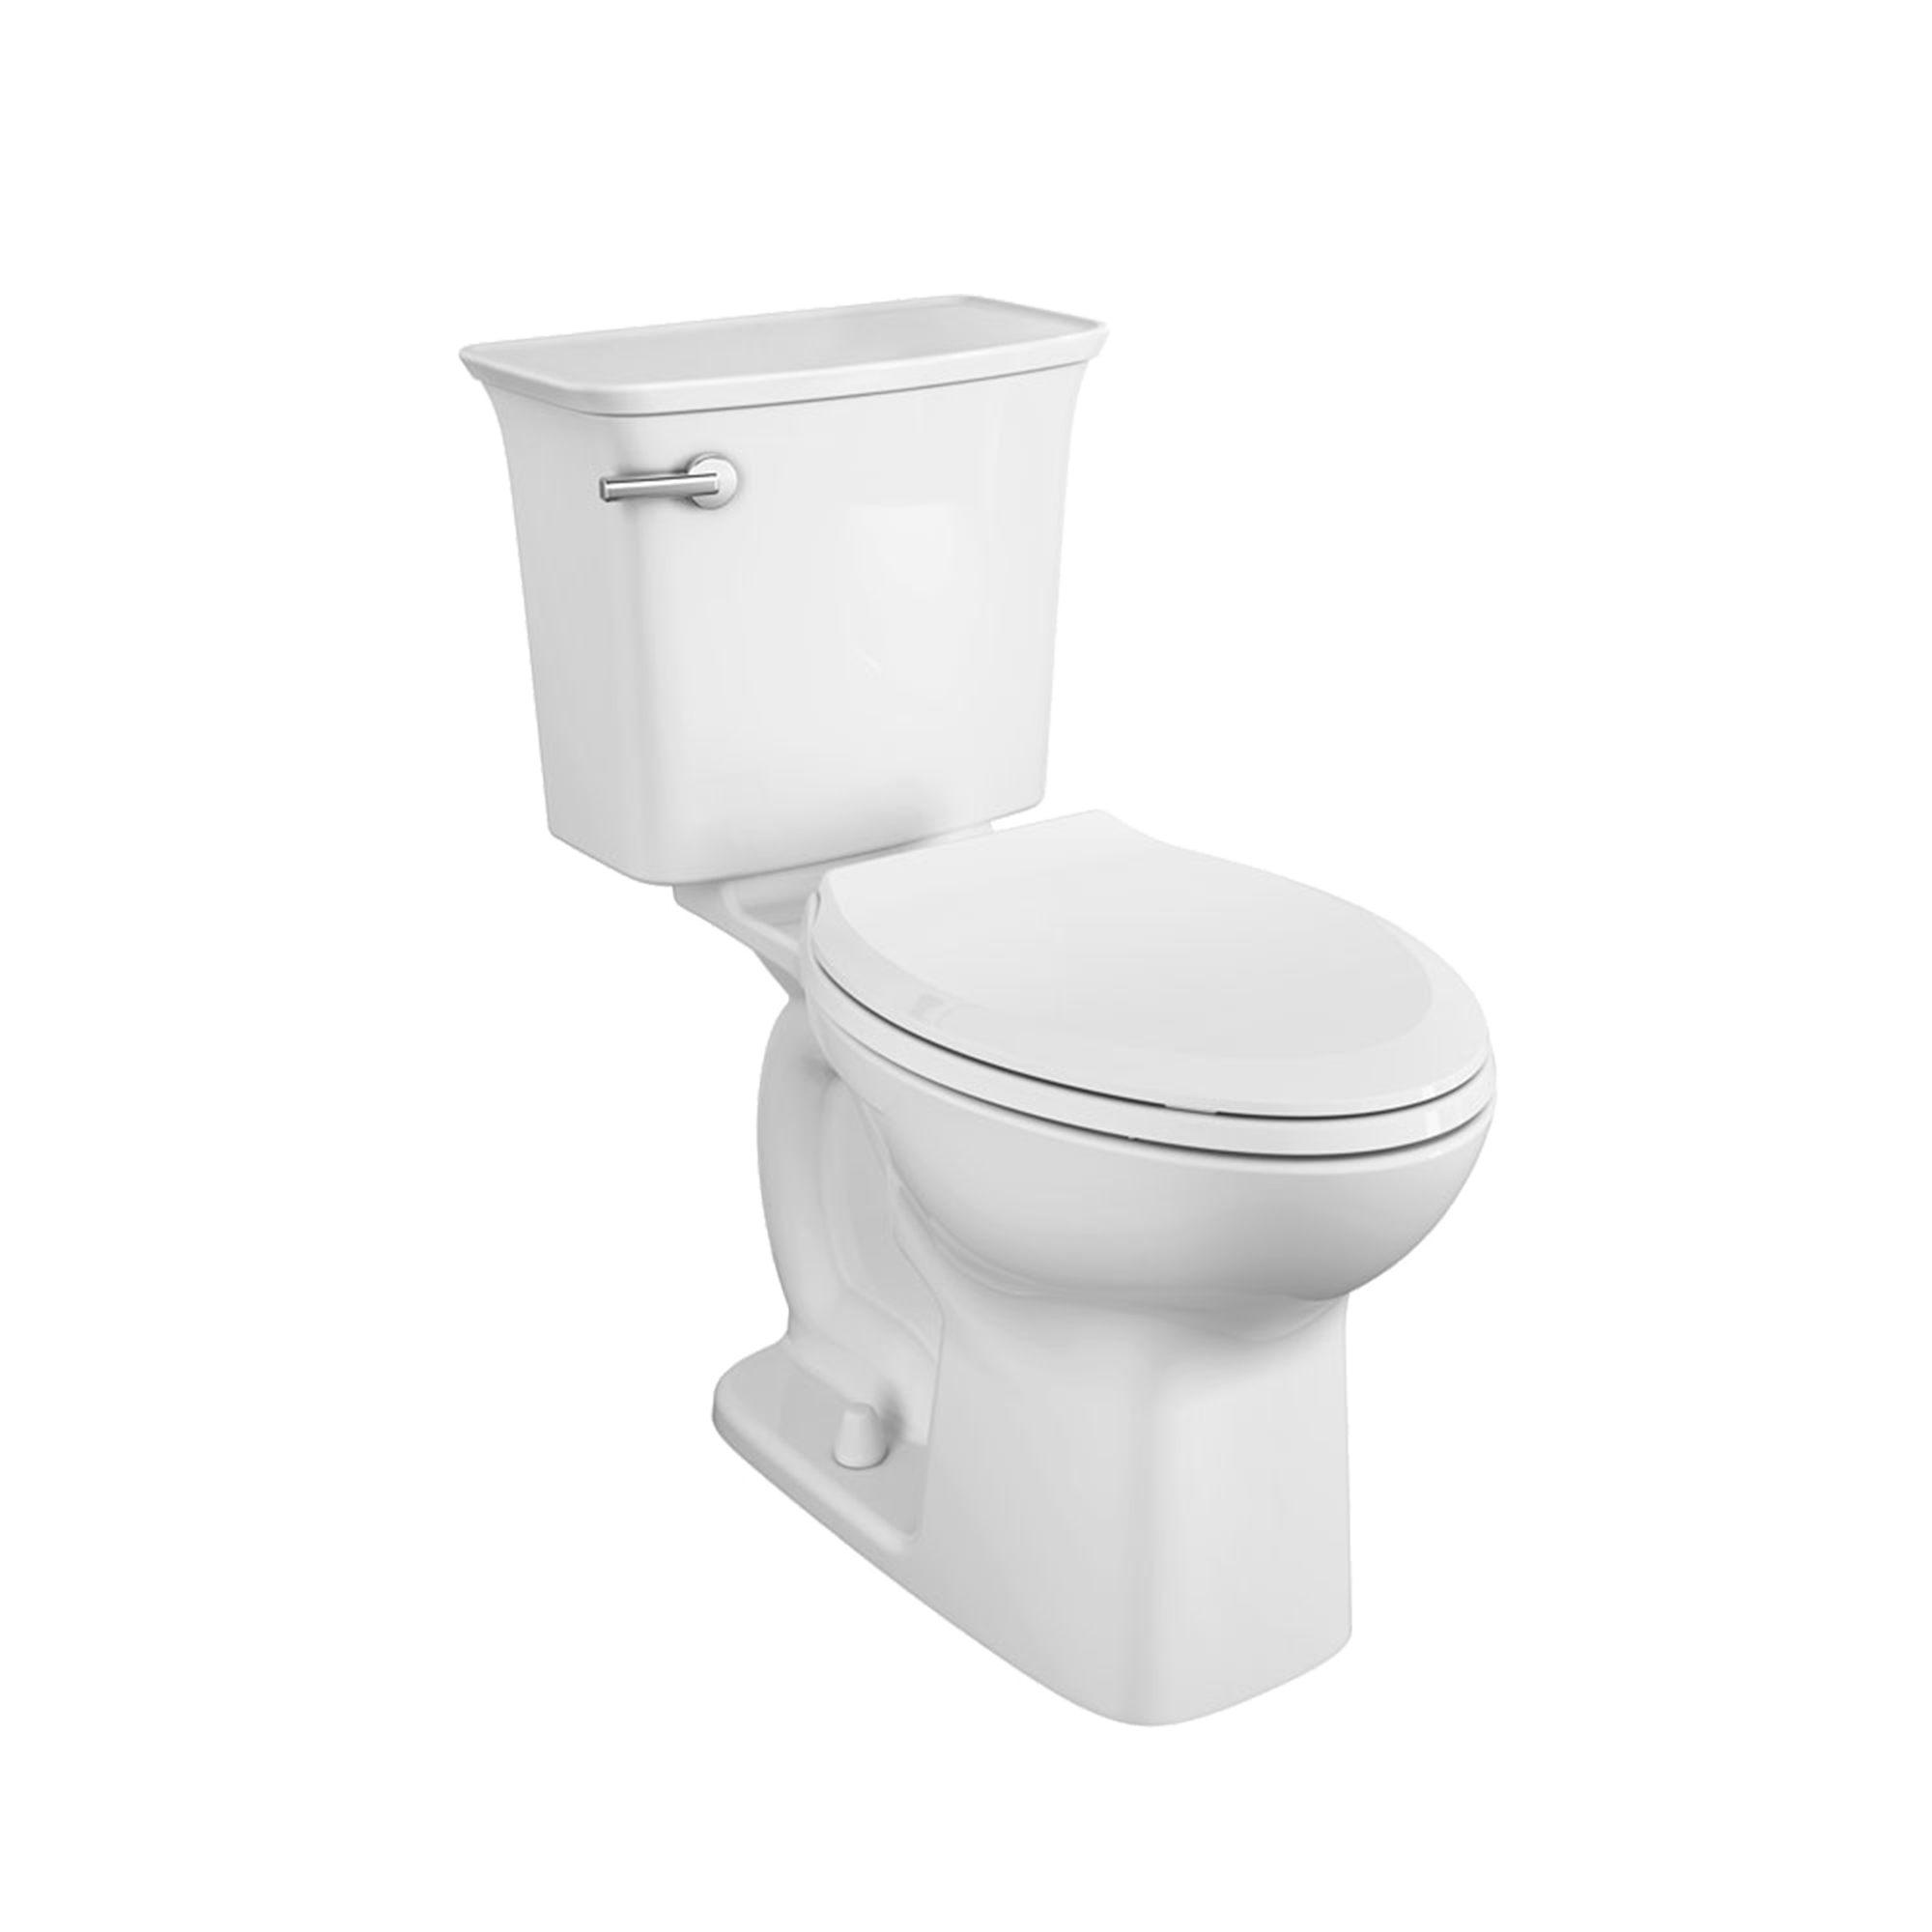 Toilette complète Cadet Millennium, 2 pièces, 1,28 gpc/4,8 lpc, à cuvette allongée à hauteur de chaise, avec siège